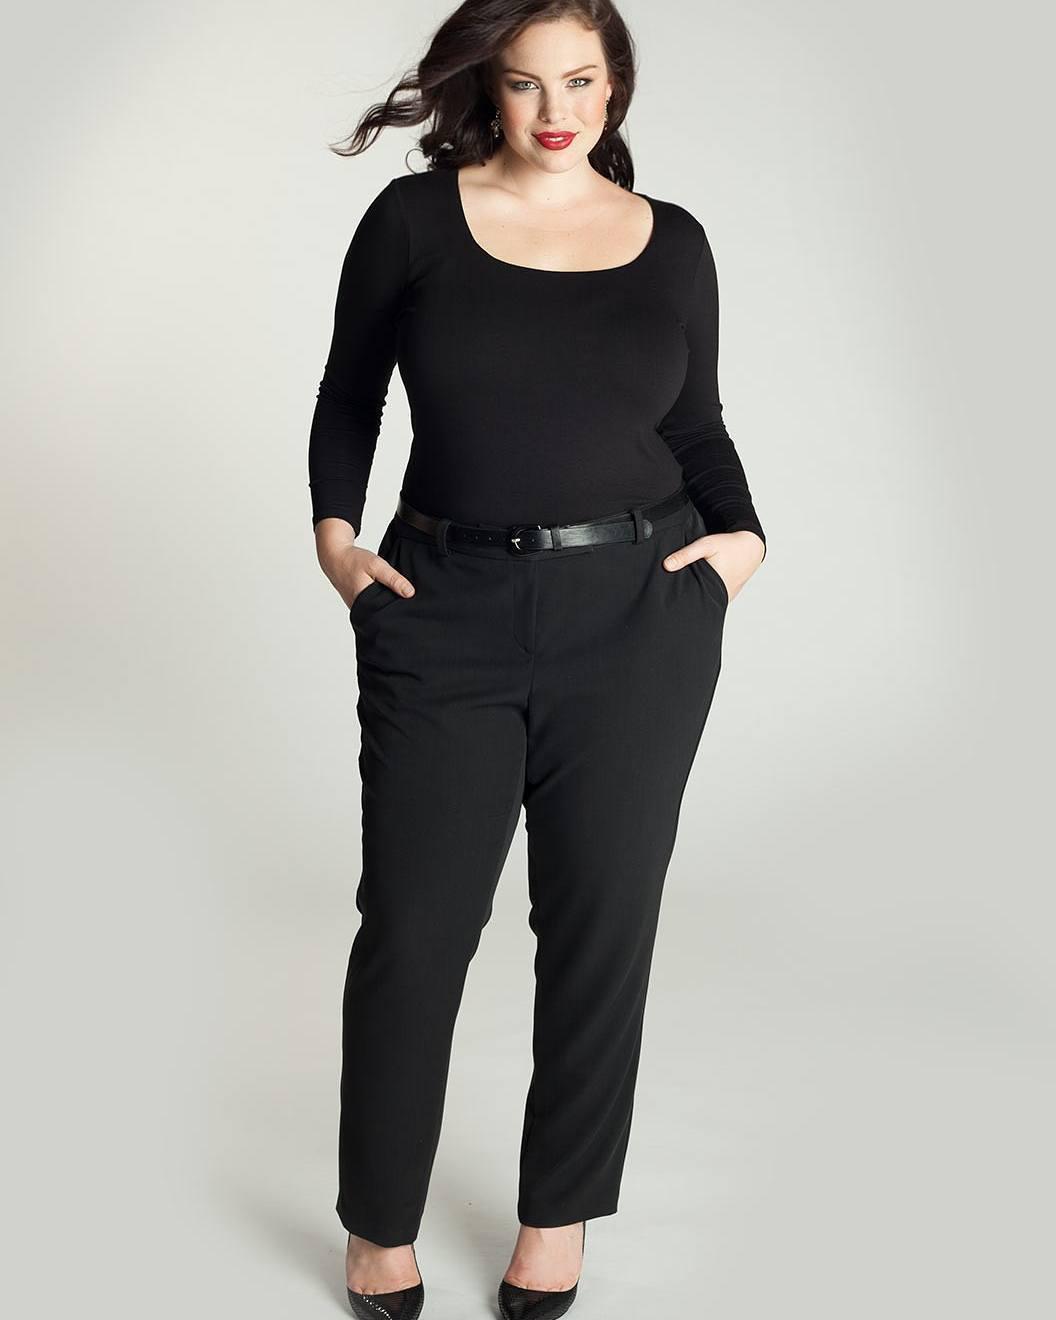 Plus-size model, Plus-size clothing - pants, fashion, clothing, dress: Plus size outfit,  black pants  